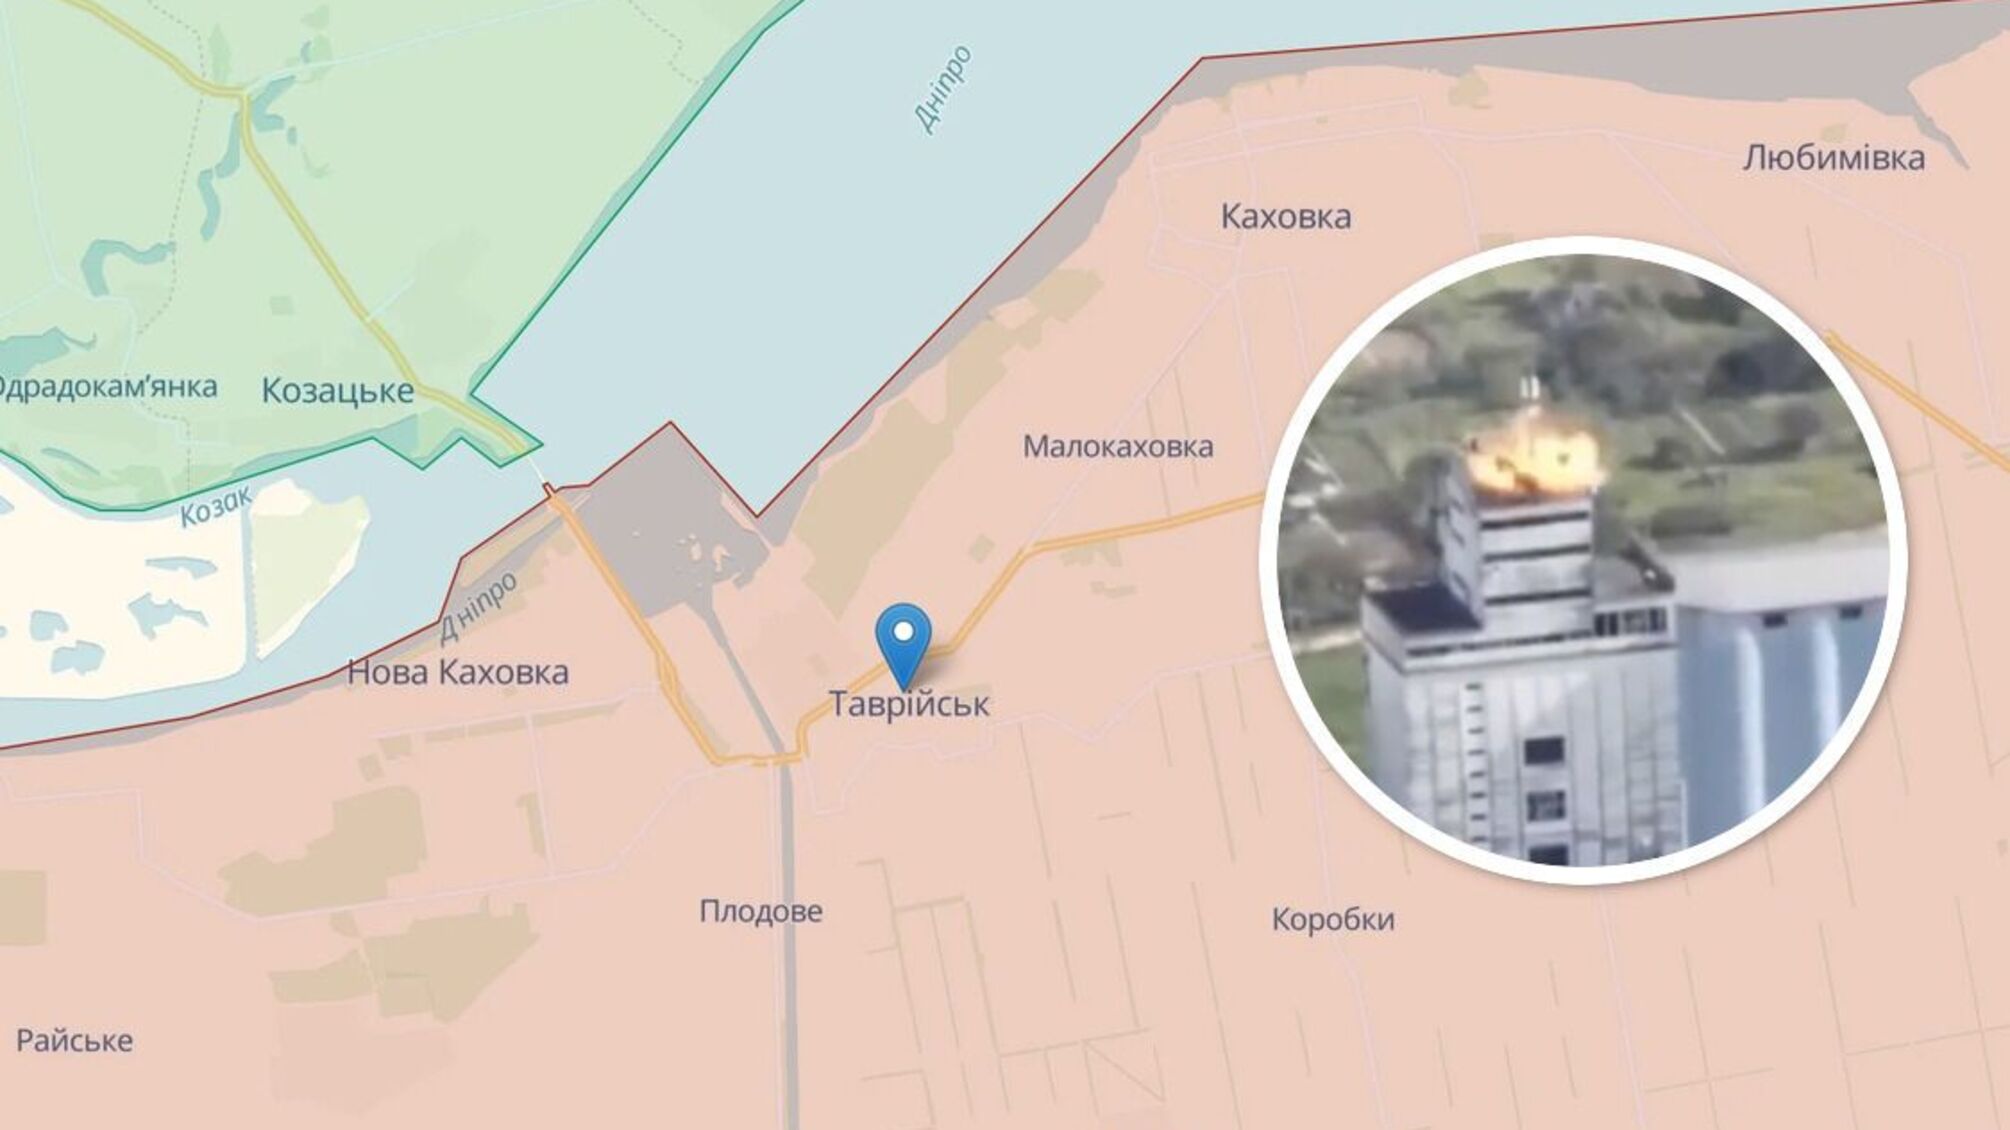 ВСУ уничтожили российскую РЭБ на крыше элеватора в 6 км от Каховского моста (видео)